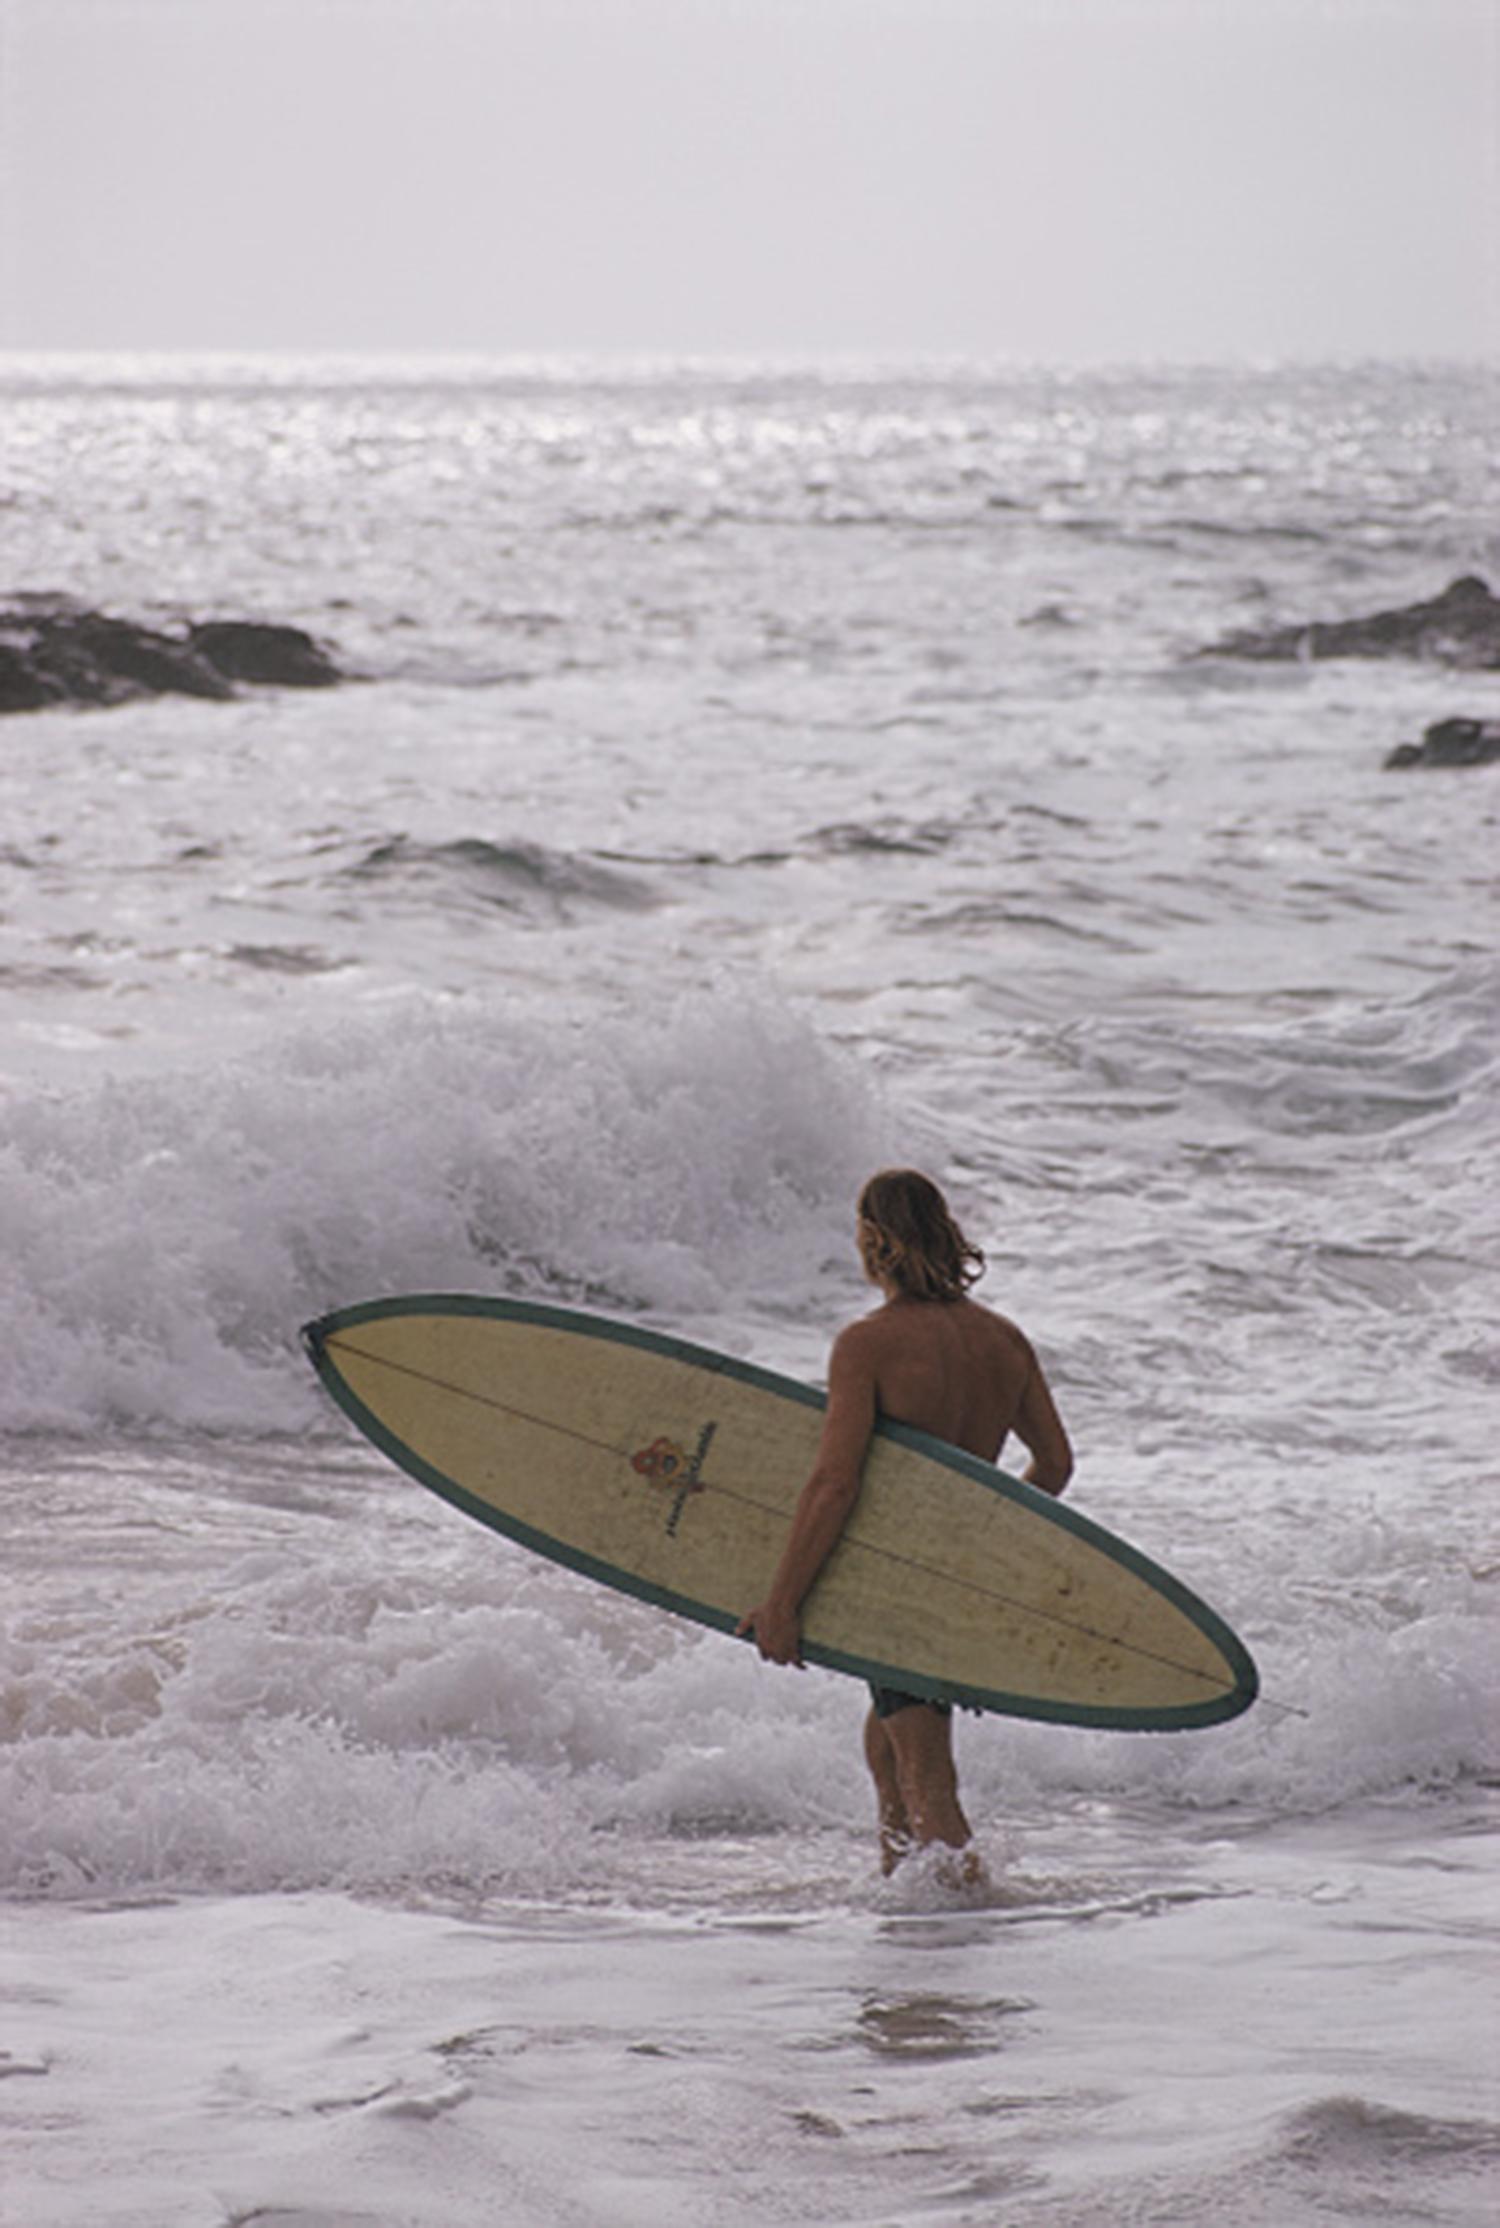 Ein Surfer im Meer in Laguna Beach, Kalifornien, Januar 1970. (Foto: Slim Aarons/Hulton Archive/Getty Images)

Slim Aarons Estate Edition, inklusive Echtheitszertifikat
Nummeriert und gestempelt vom Slim Aarons Estate

Moderne Nachlassausgabe mit